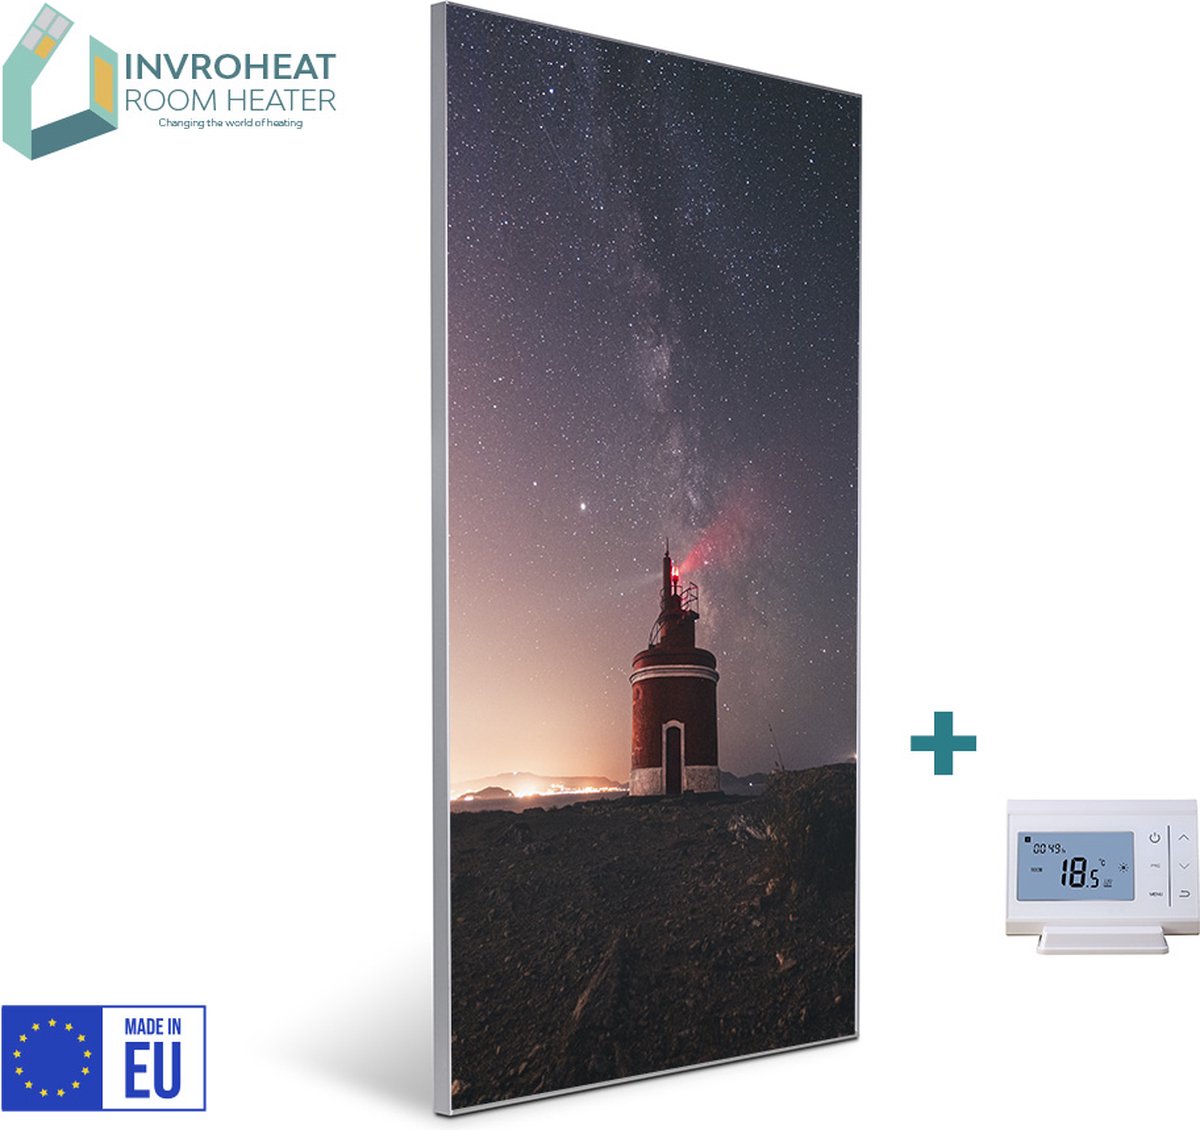 Invroheat infrarood verwarmingspaneel Lighthouse - 800W - 61x91.5cm - Duurzaam, zeer energie efficiënt en warmt snel op - afbeelding verwisselbaar - met display thermostaat - met afstandsbediening